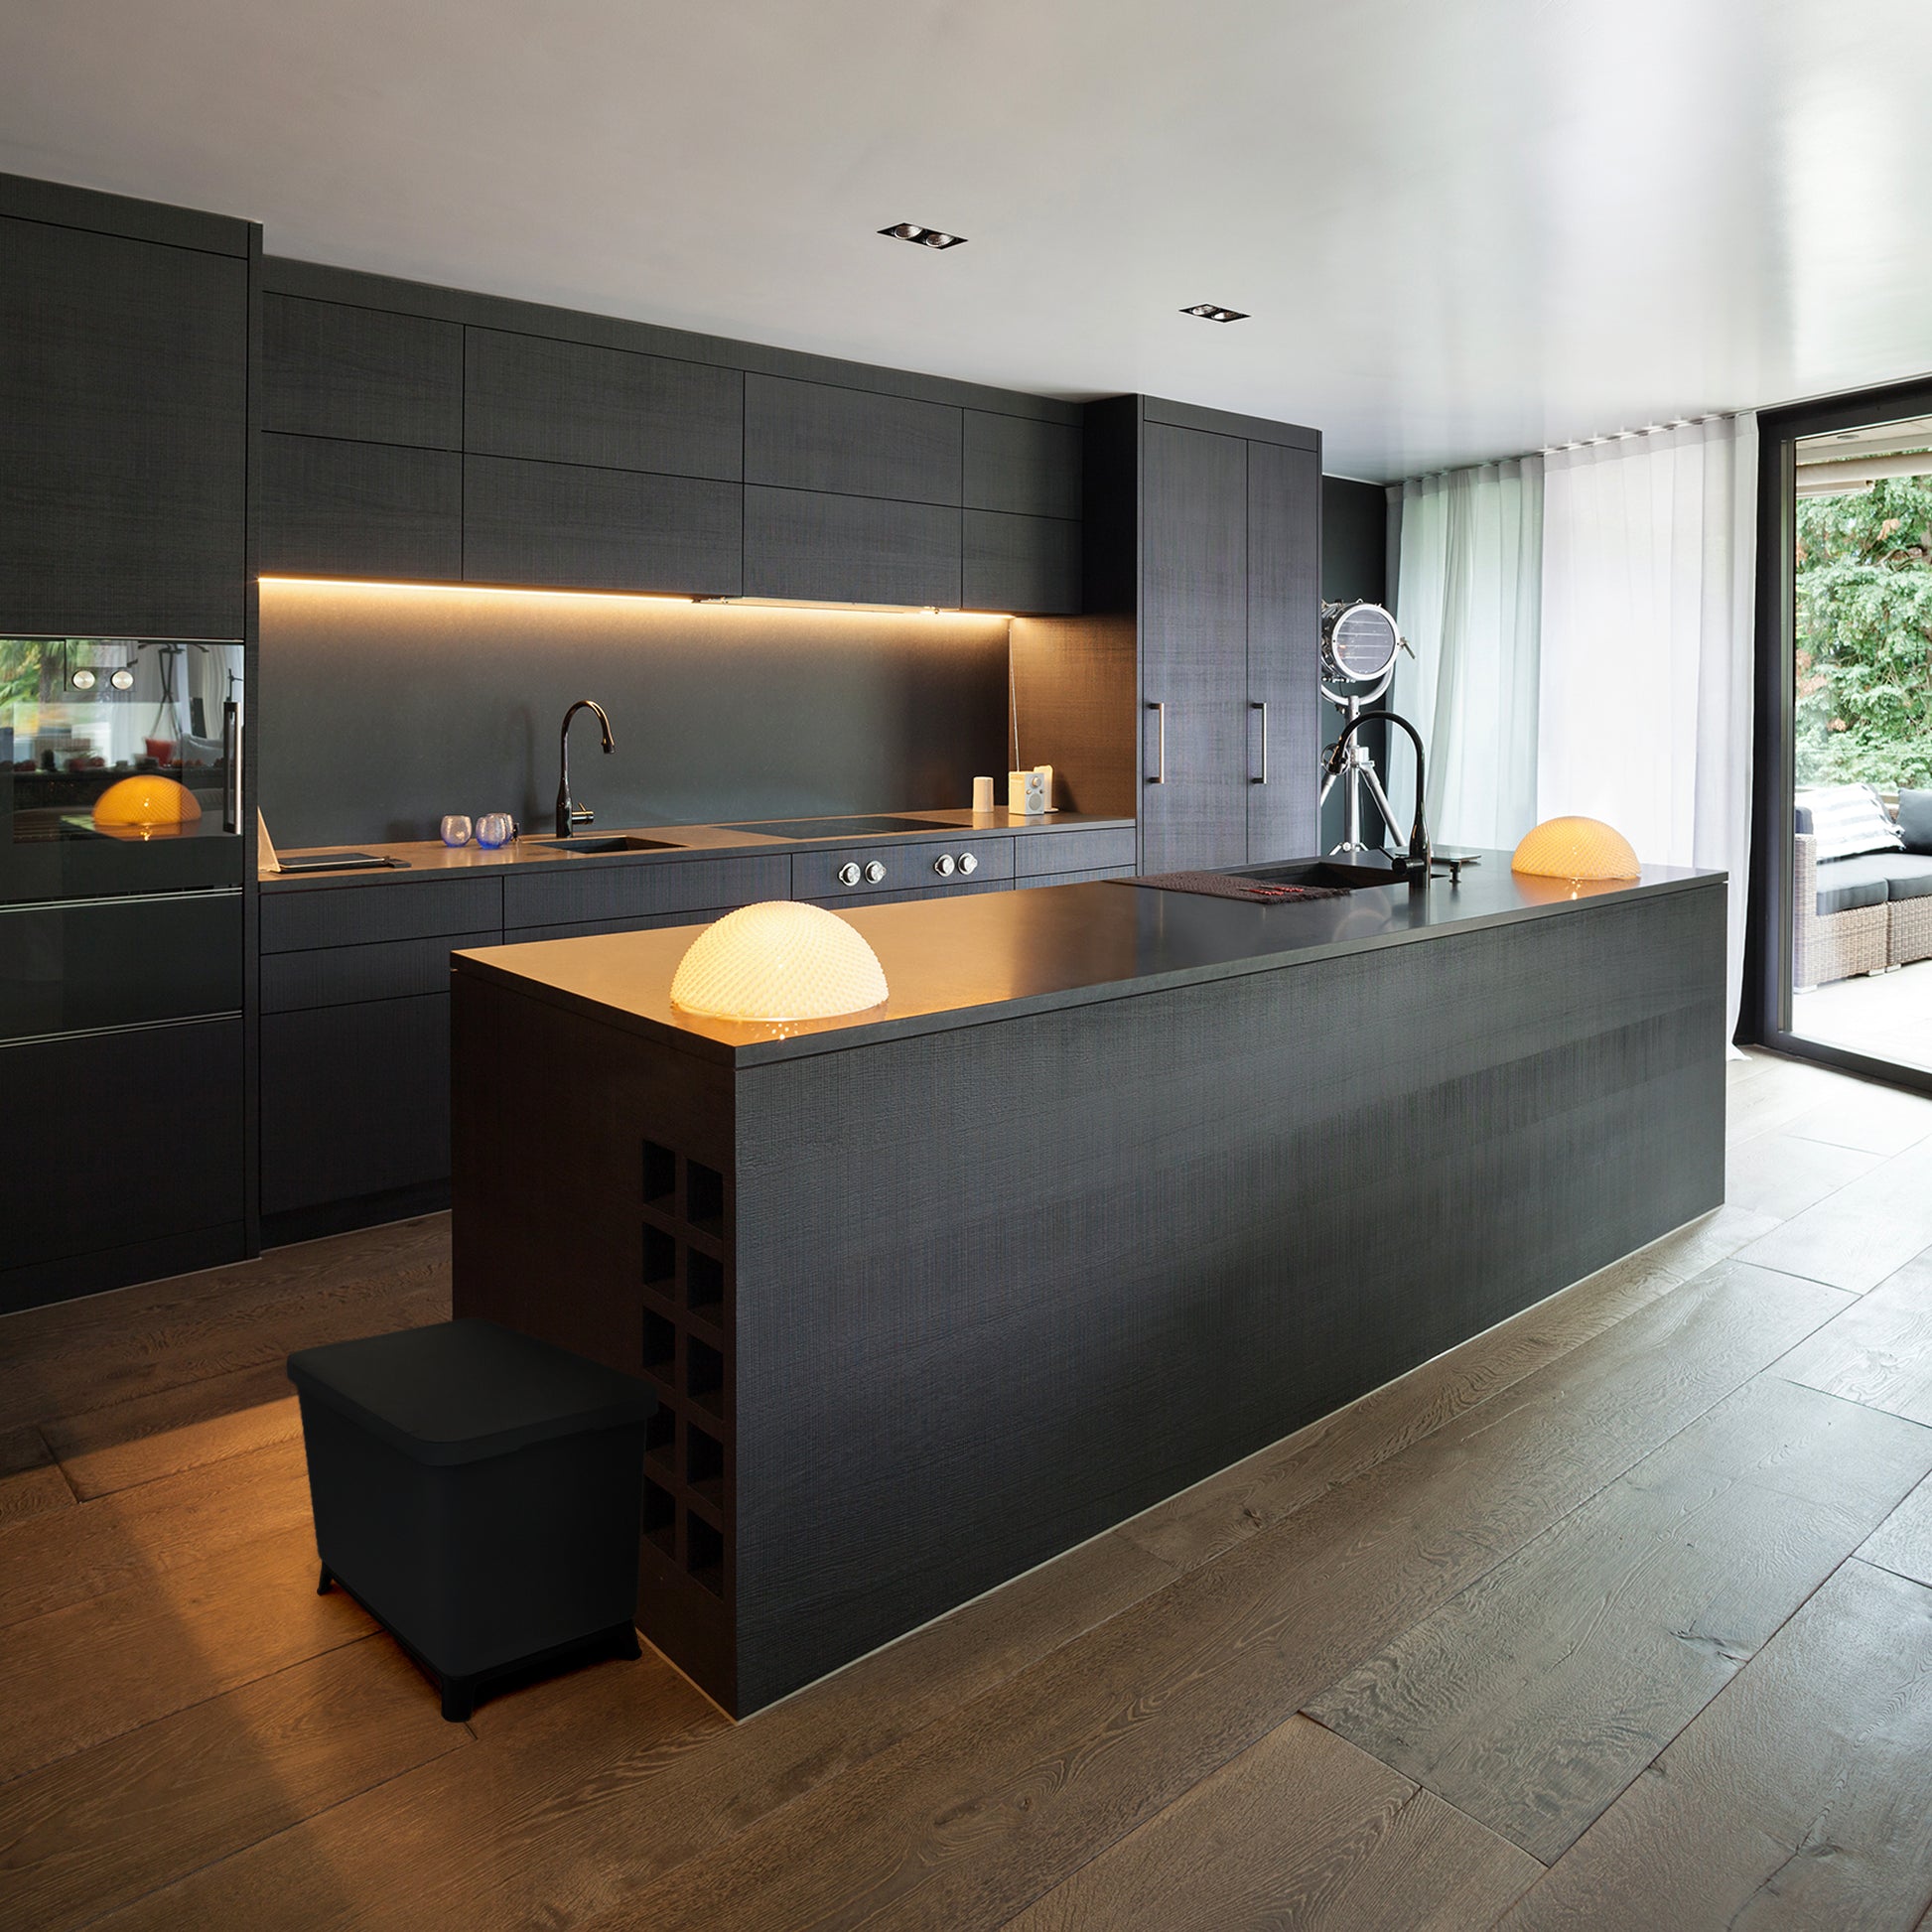 Eine moderne Küche mit einer schwarzen Insel und YourCasa® Mülleimer 2-4 Fächer [20-40L] im exklusiven Design – Mülltrennsystem mit Deckel und Fuß.